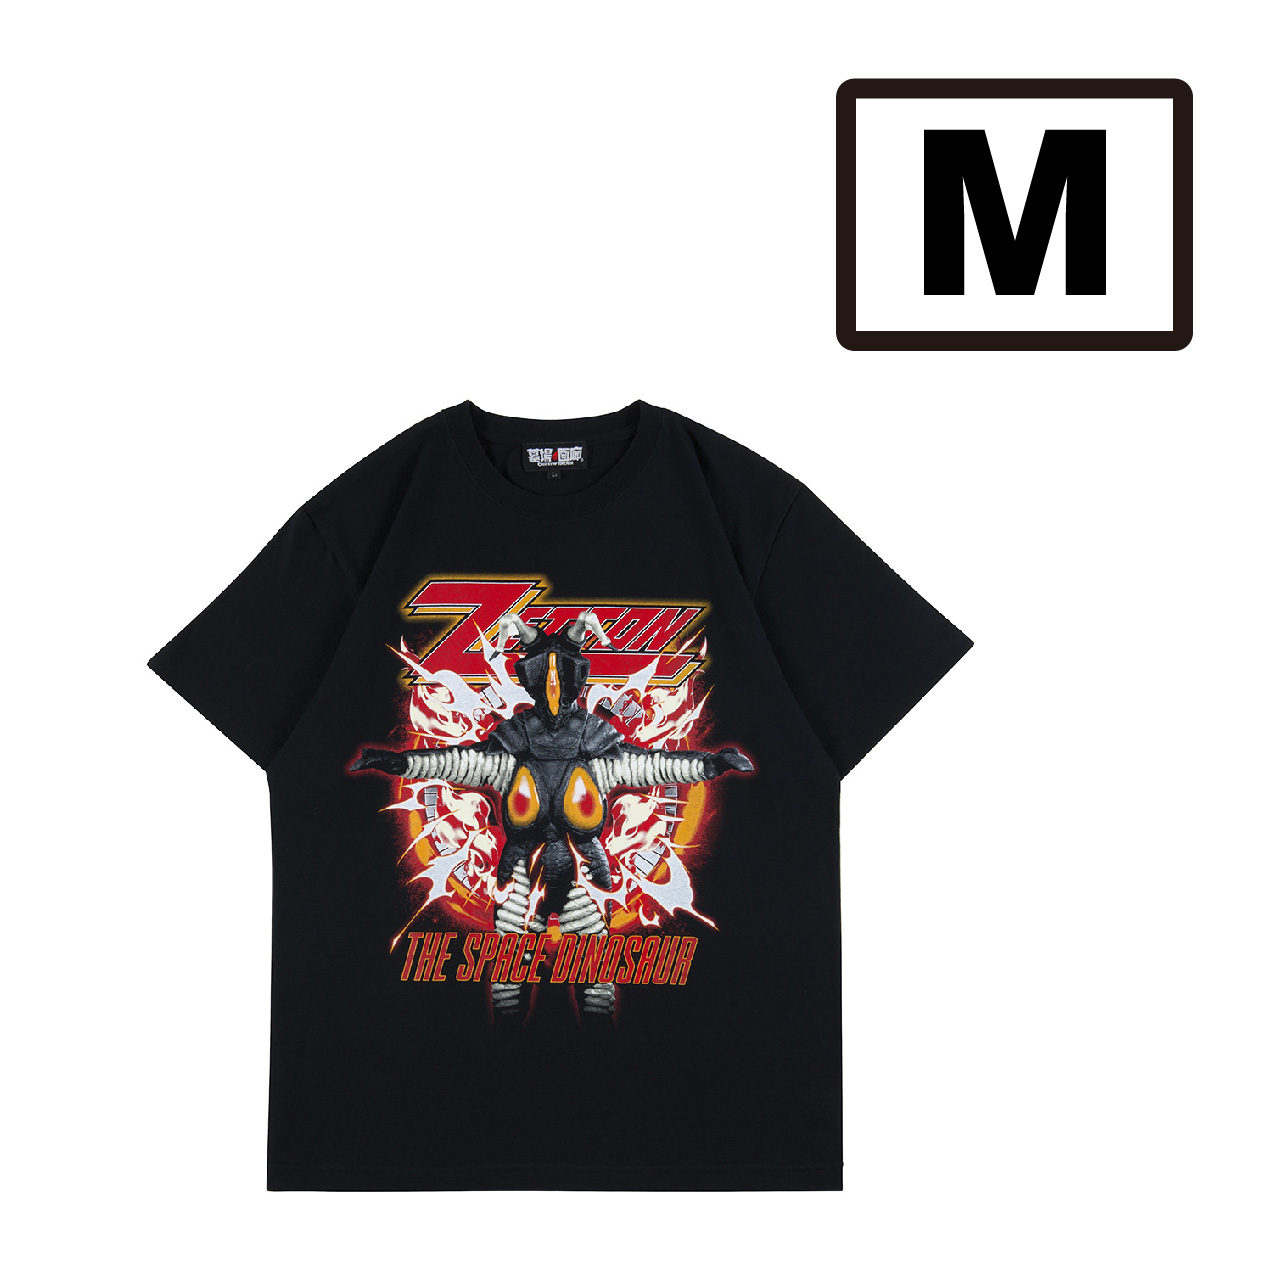 ウルトラマン/ゼットンTシャツ 墓場のメタルシャツシリーズ/M/ブラック